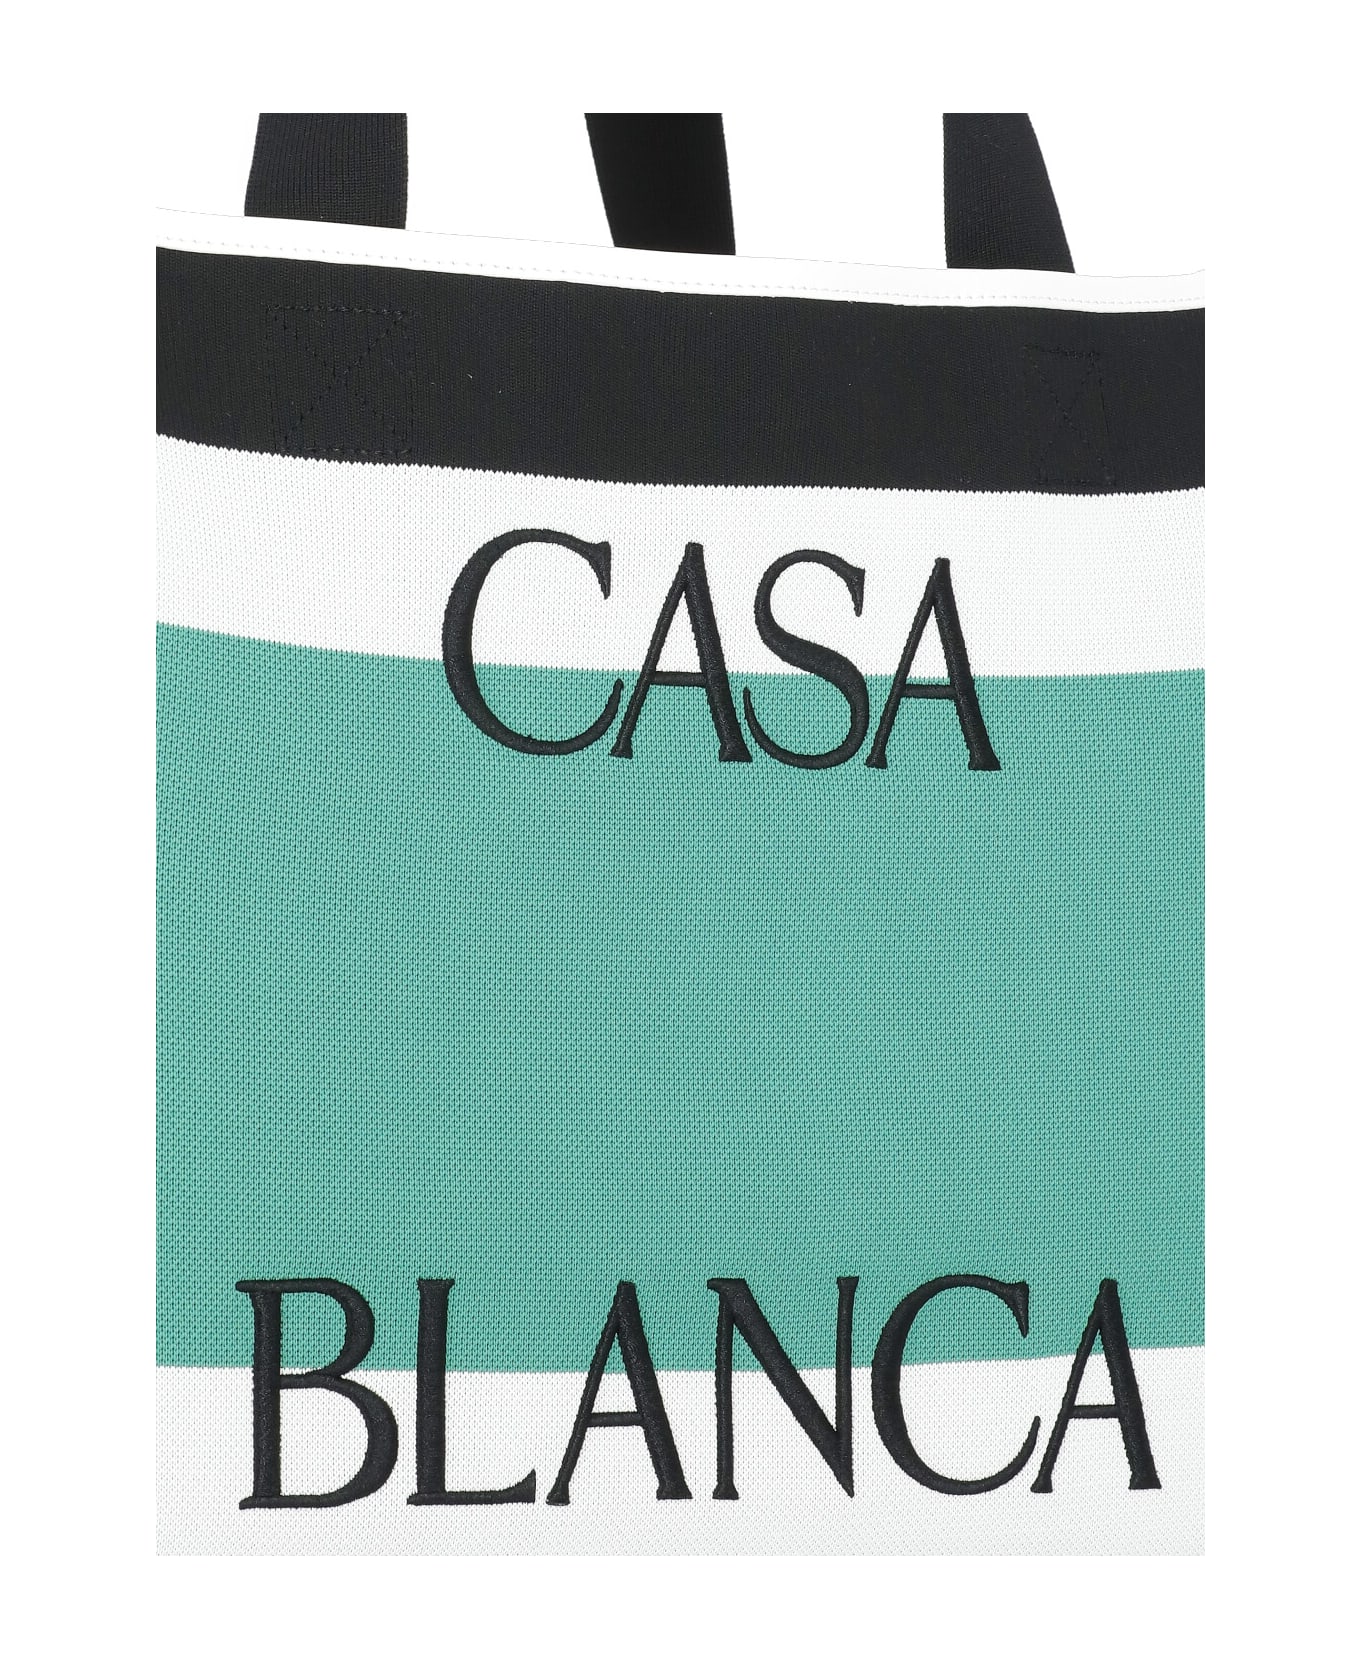 Casablanca Shopping Bag With Logo - White